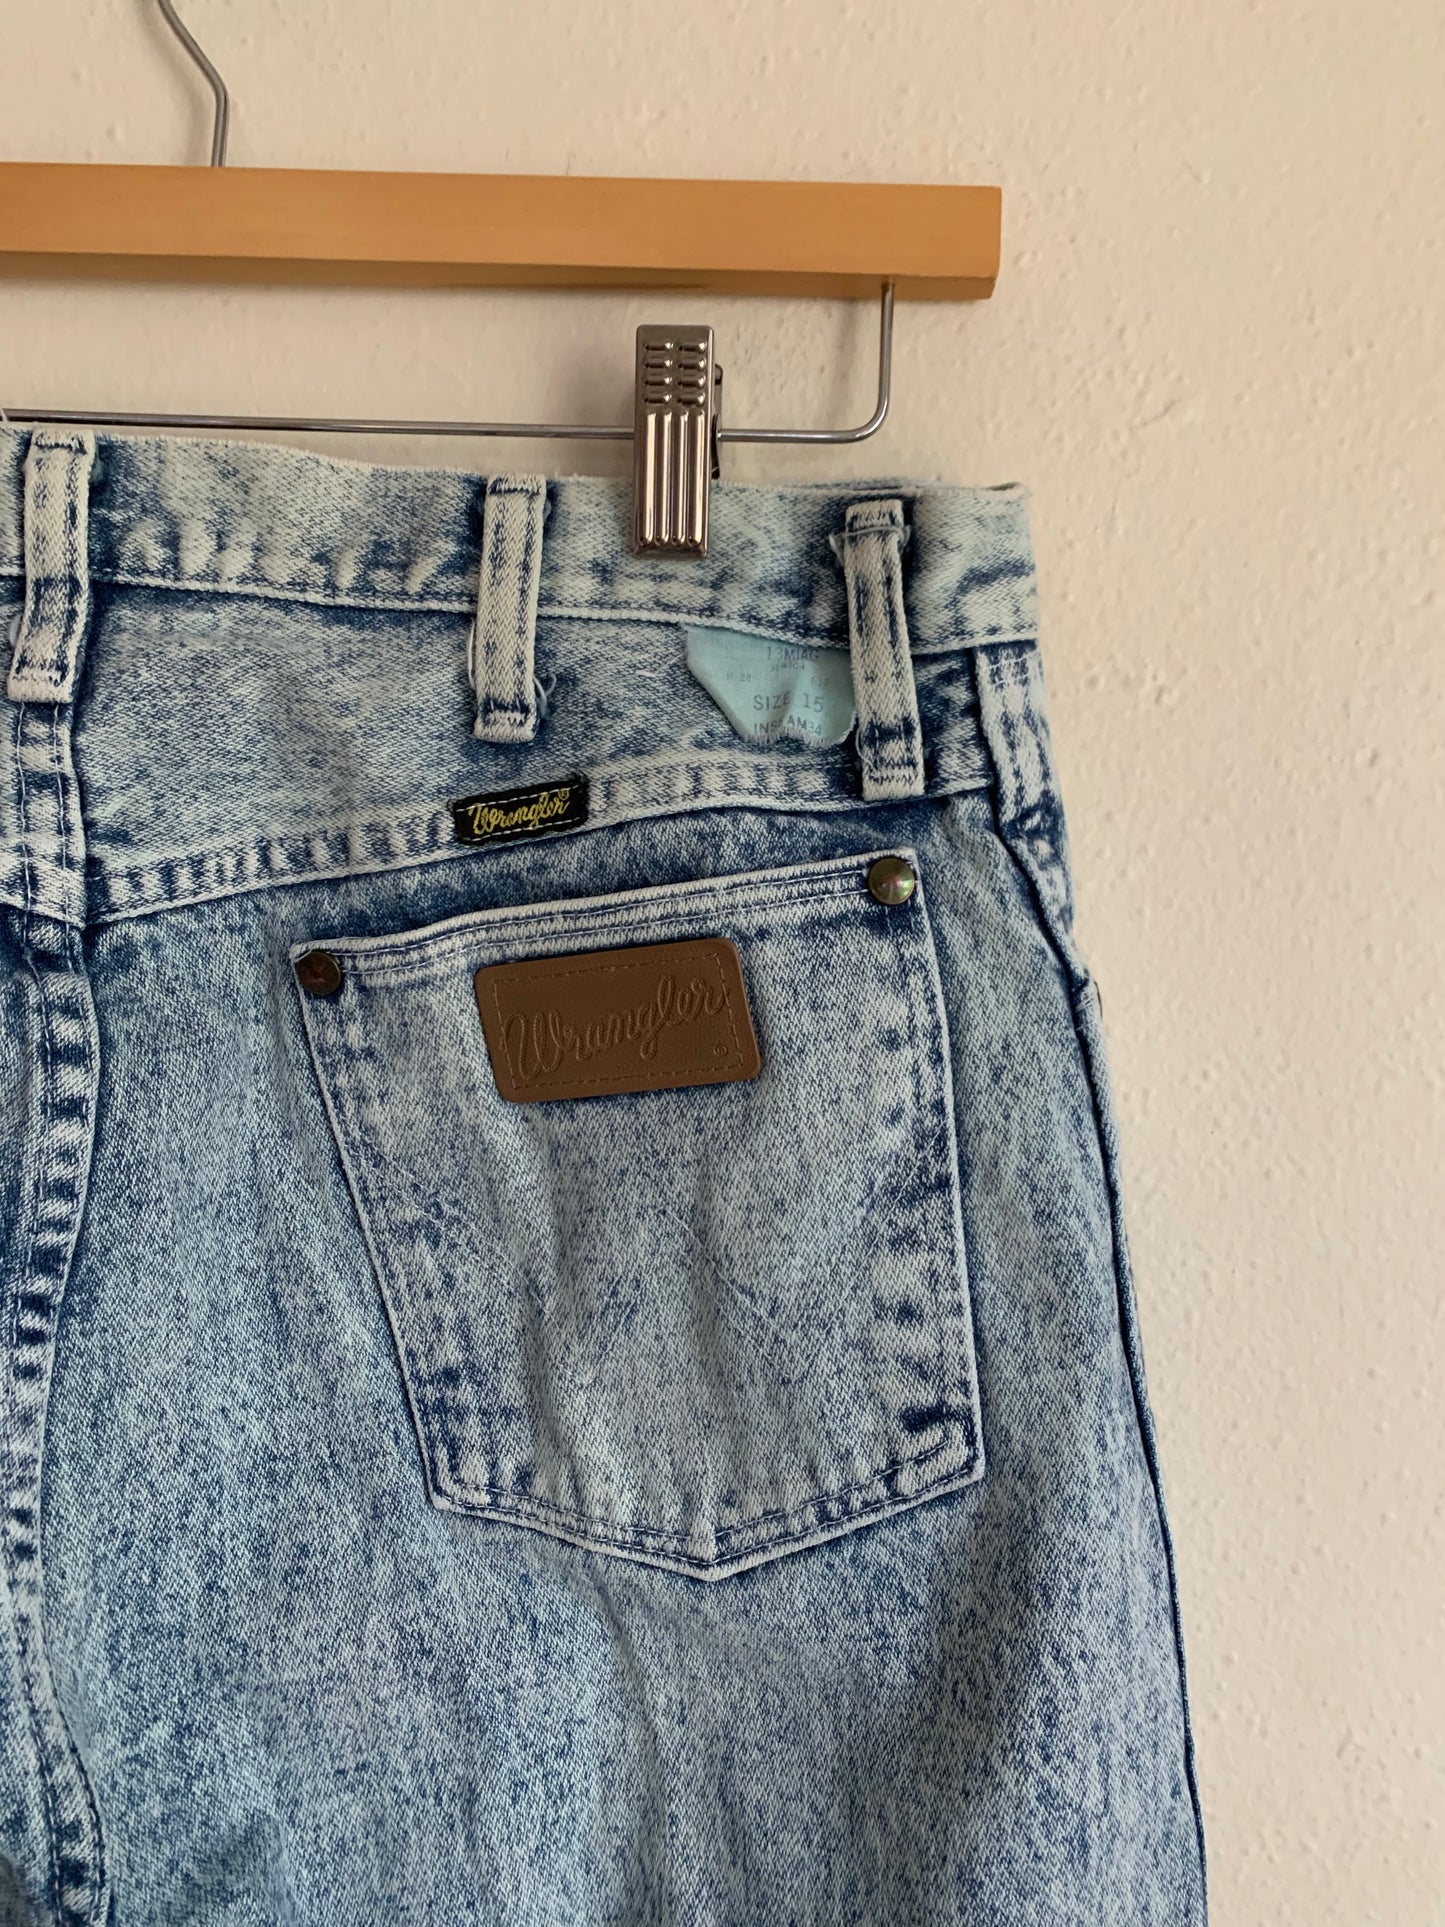 Vintage Wrangler Acid Wash Jeans (32x33)